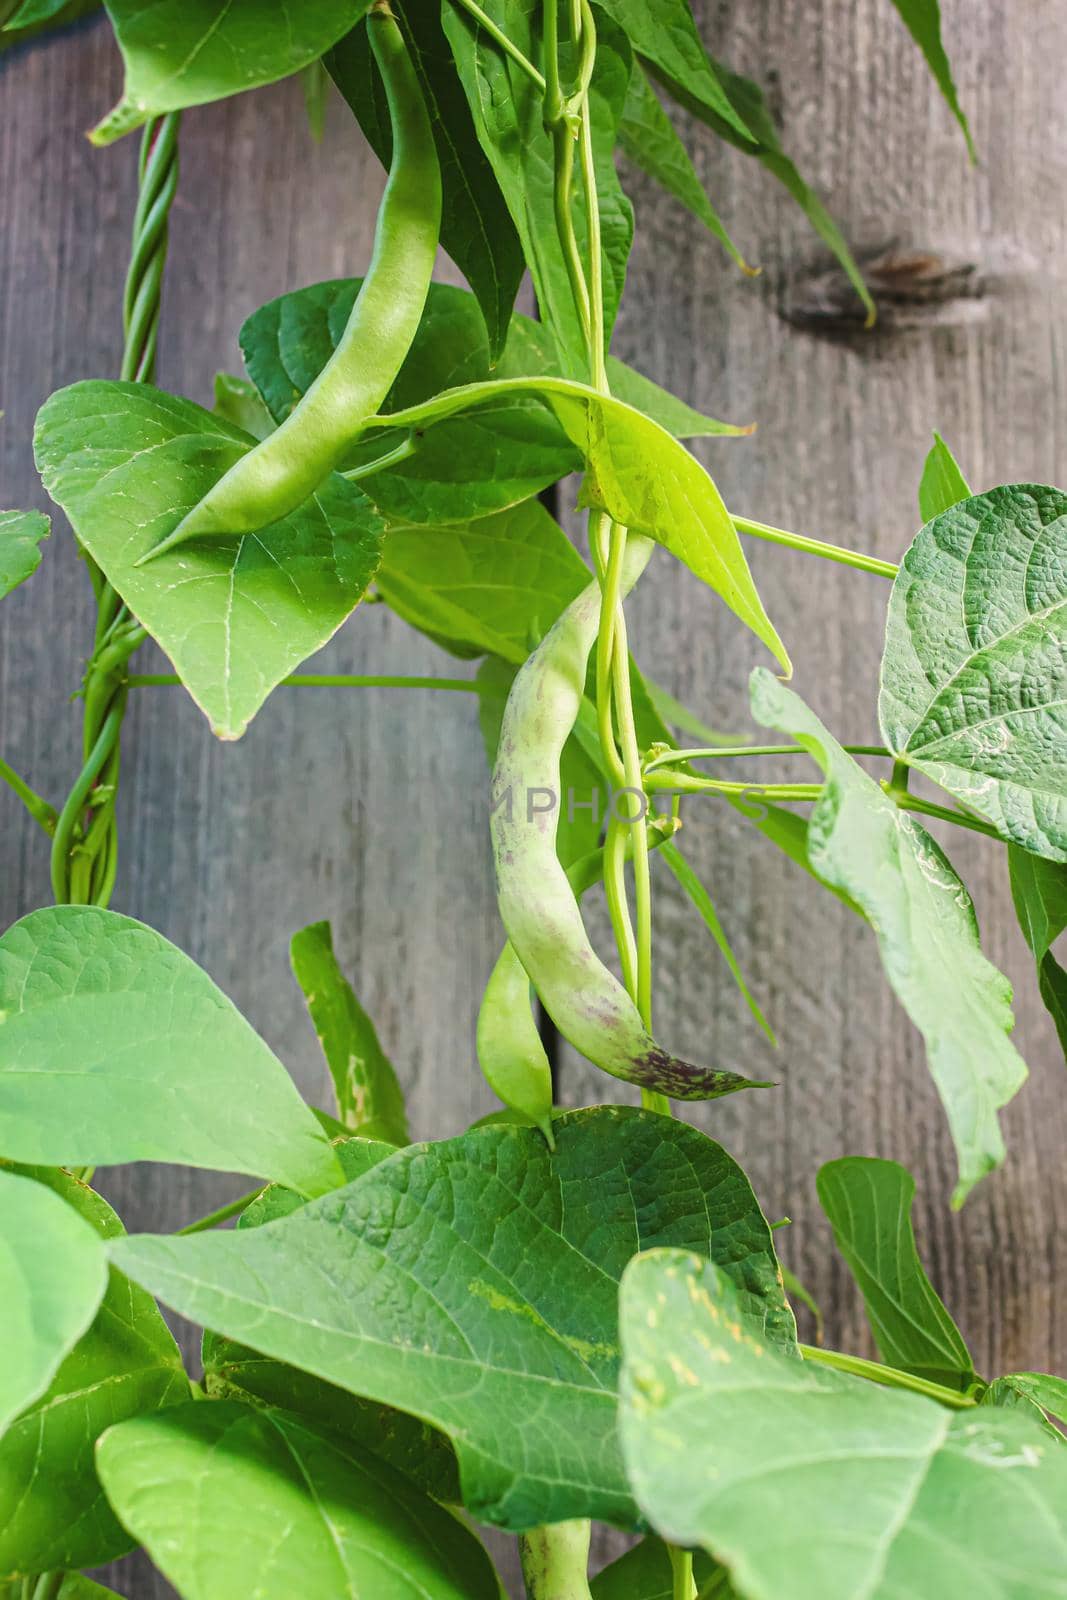 selenium bean pods in garden. selective focus.food